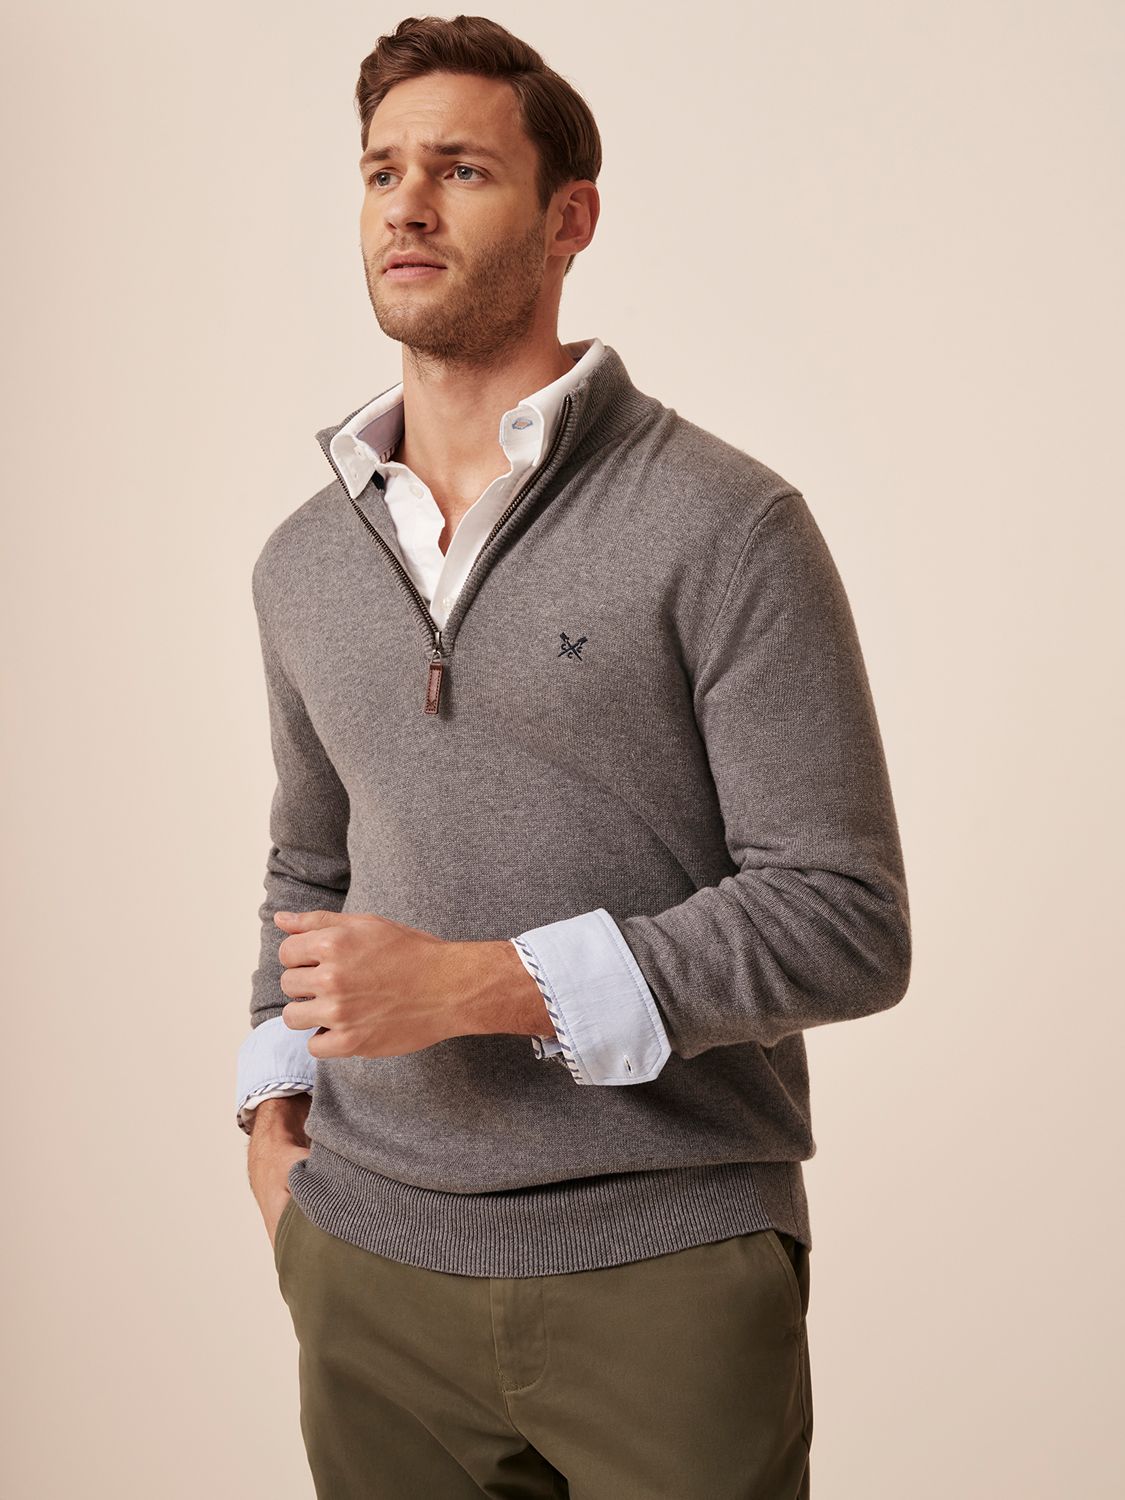 Men's Sweaters & Cardigans, Designer & Half Zip Knits